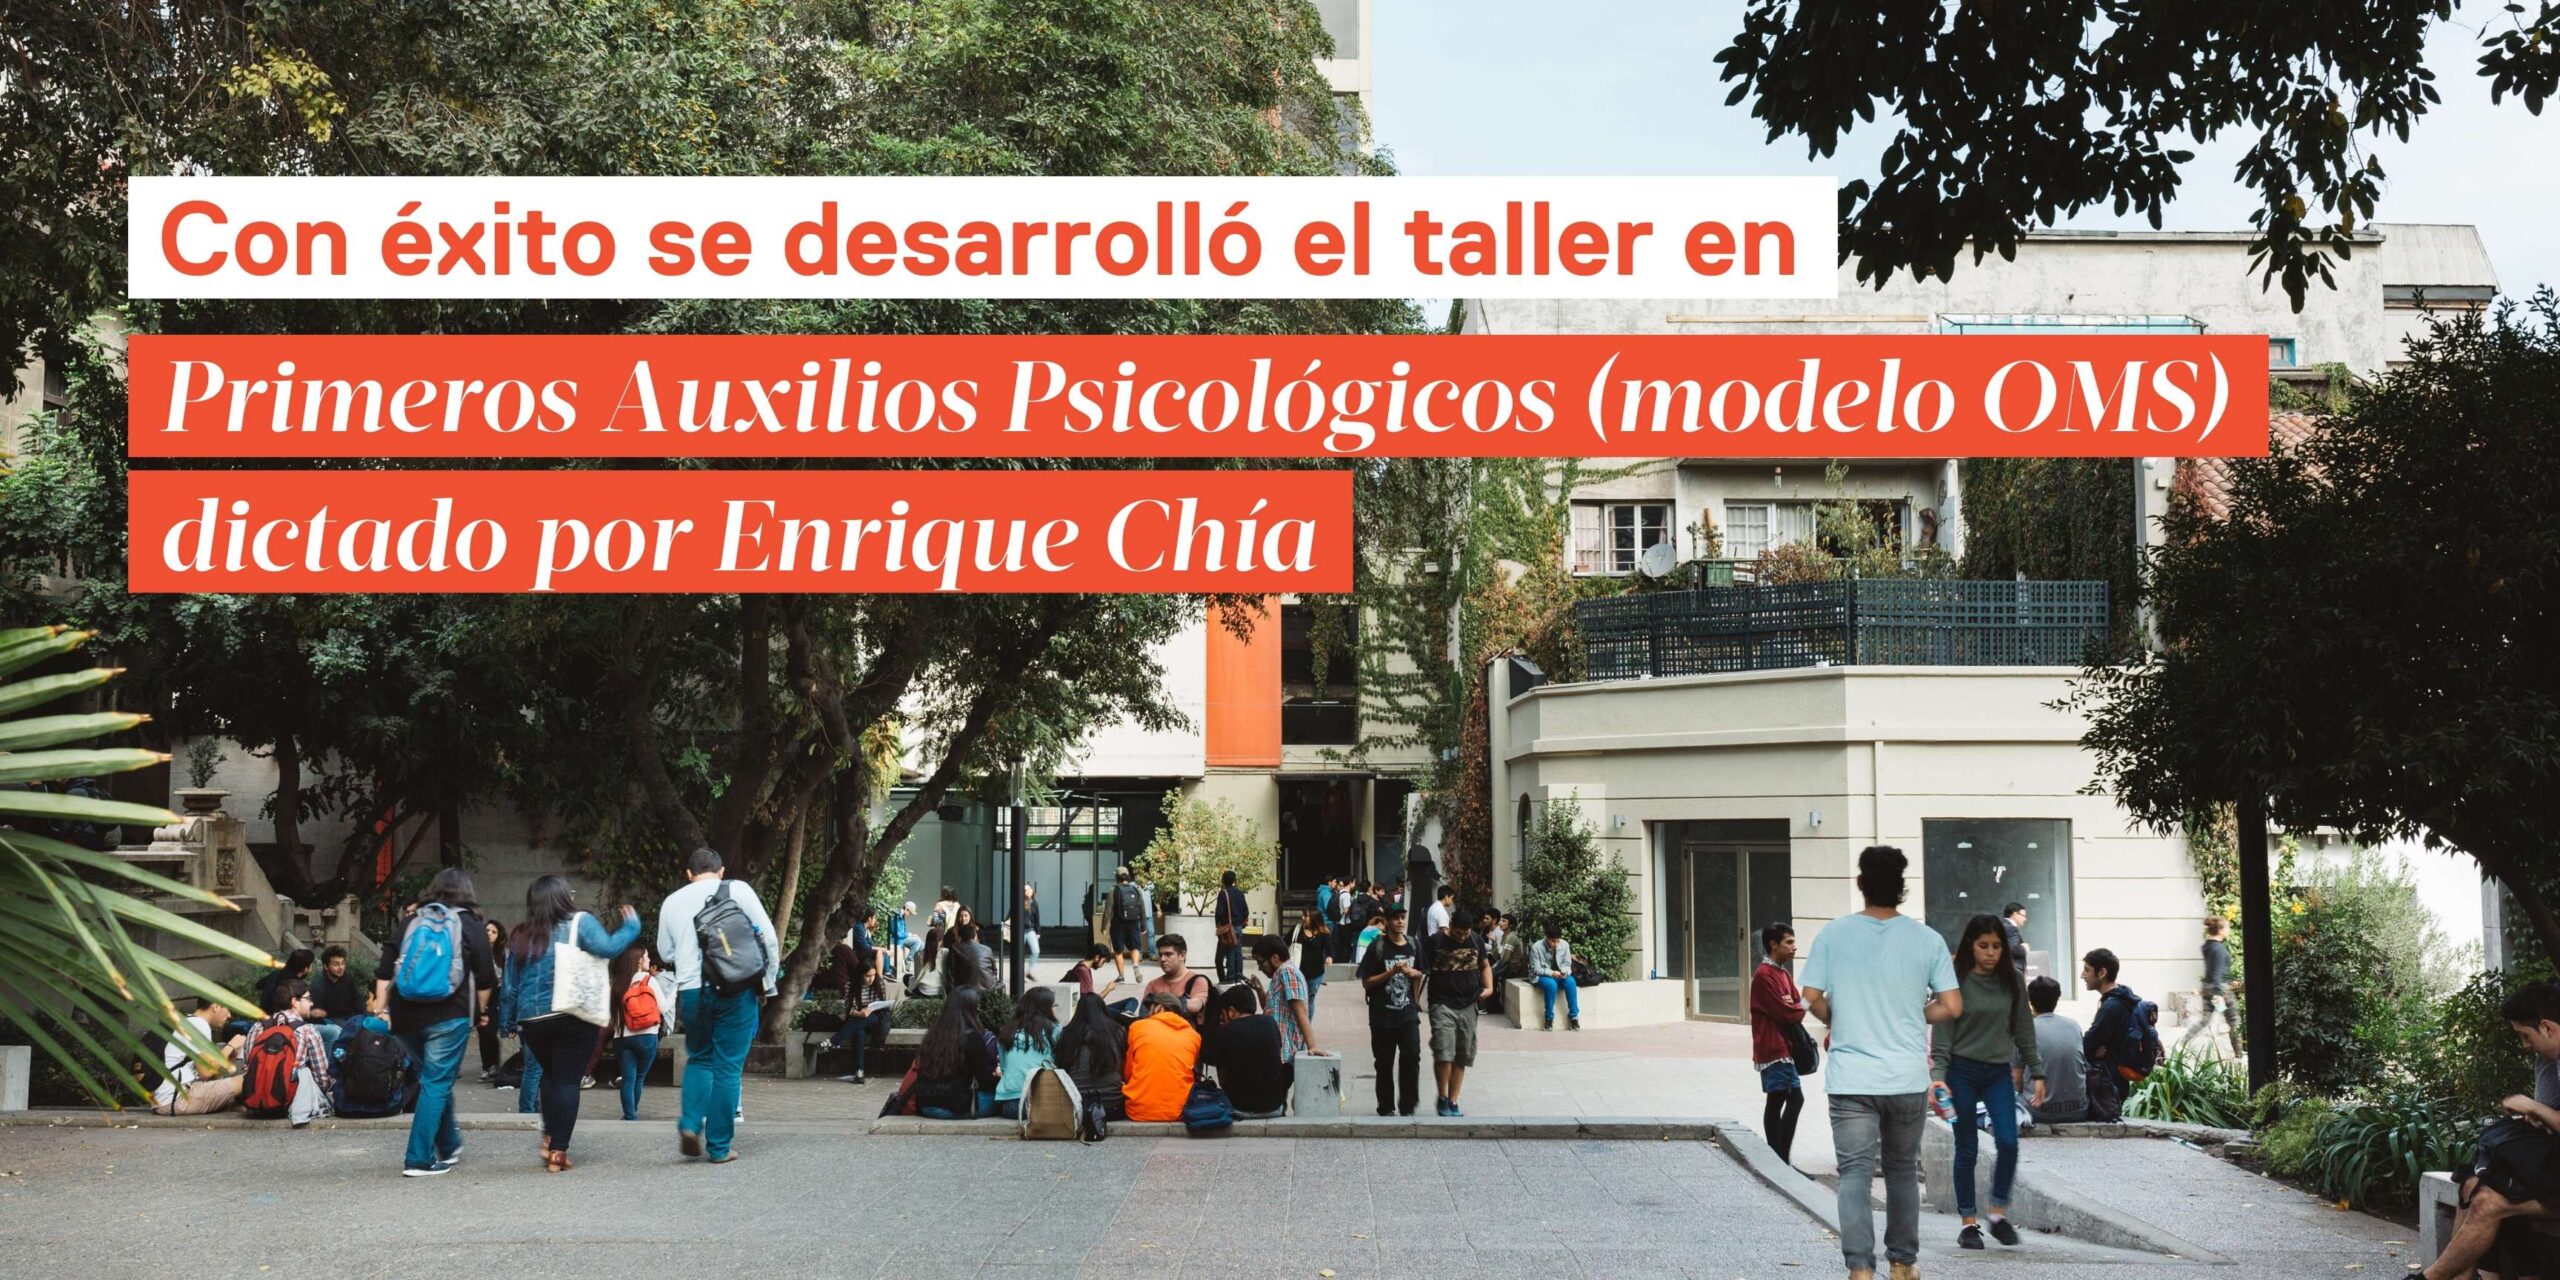 Con éxito se desarrolló el taller en Primeros Auxilios Psicológicos (Modelo OMS) dictado por Enrique Chía